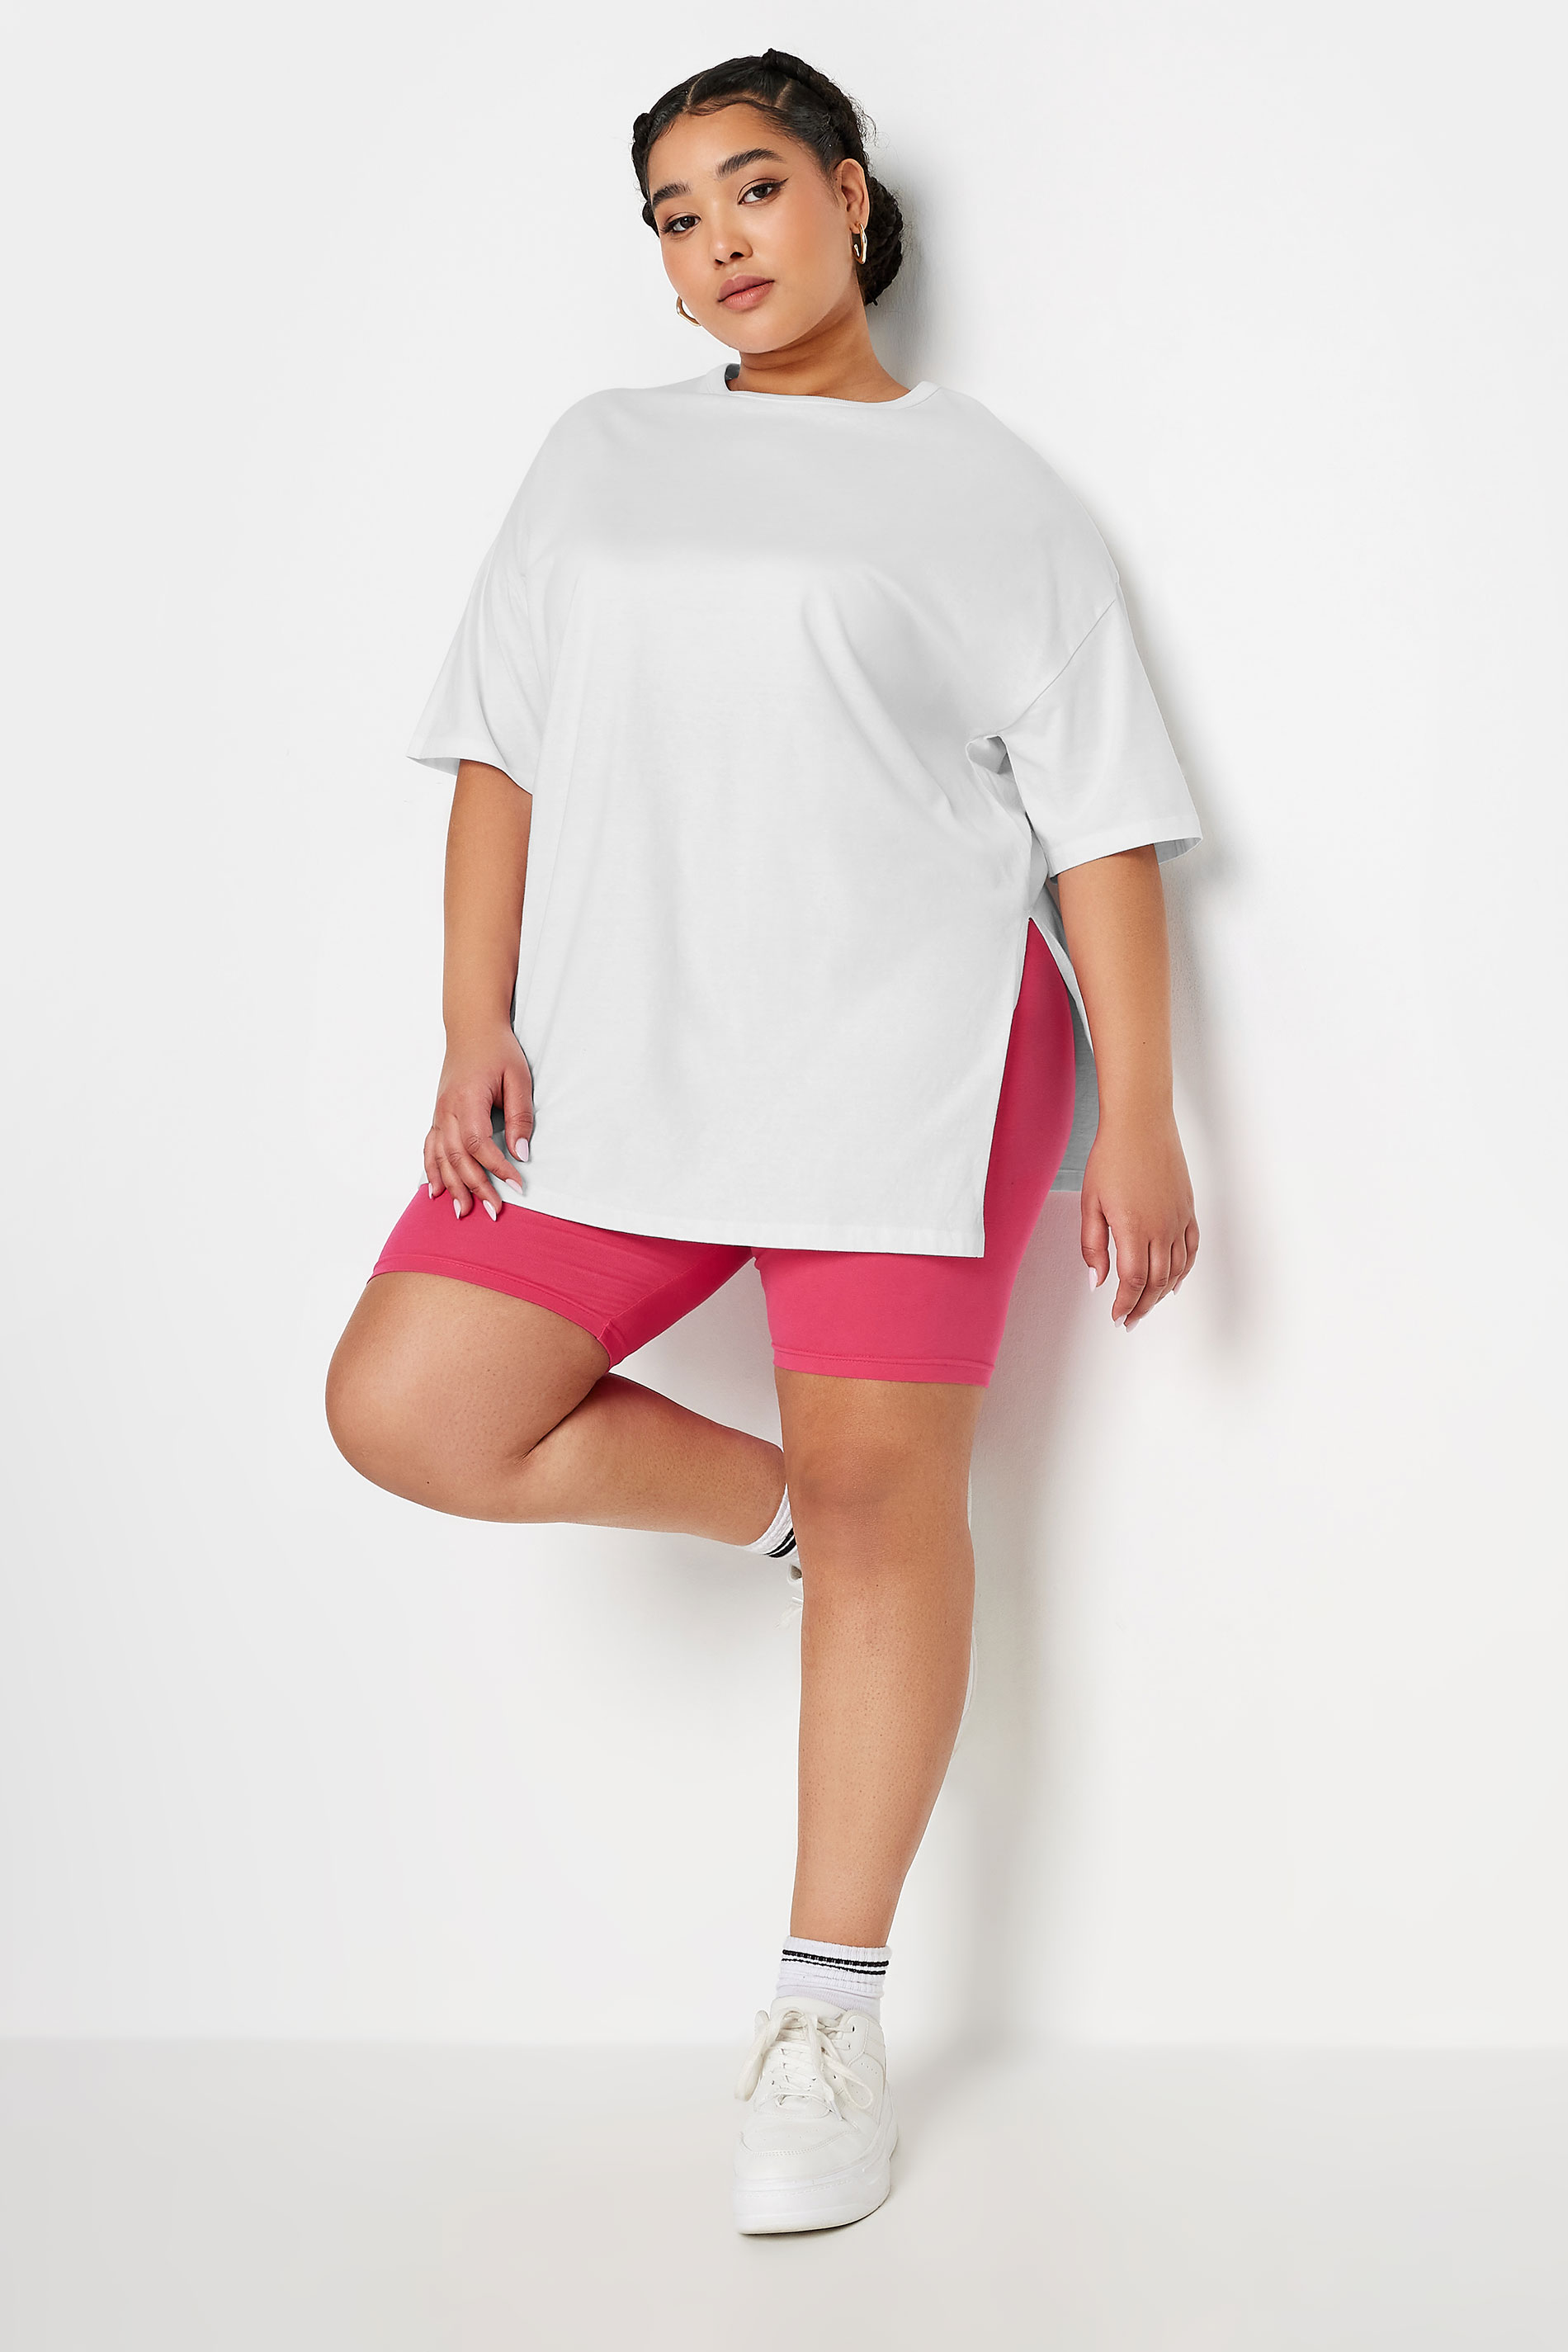 YOURS Plus Size White Split Hem Oversized T-Shirt | Yours Clothing 2